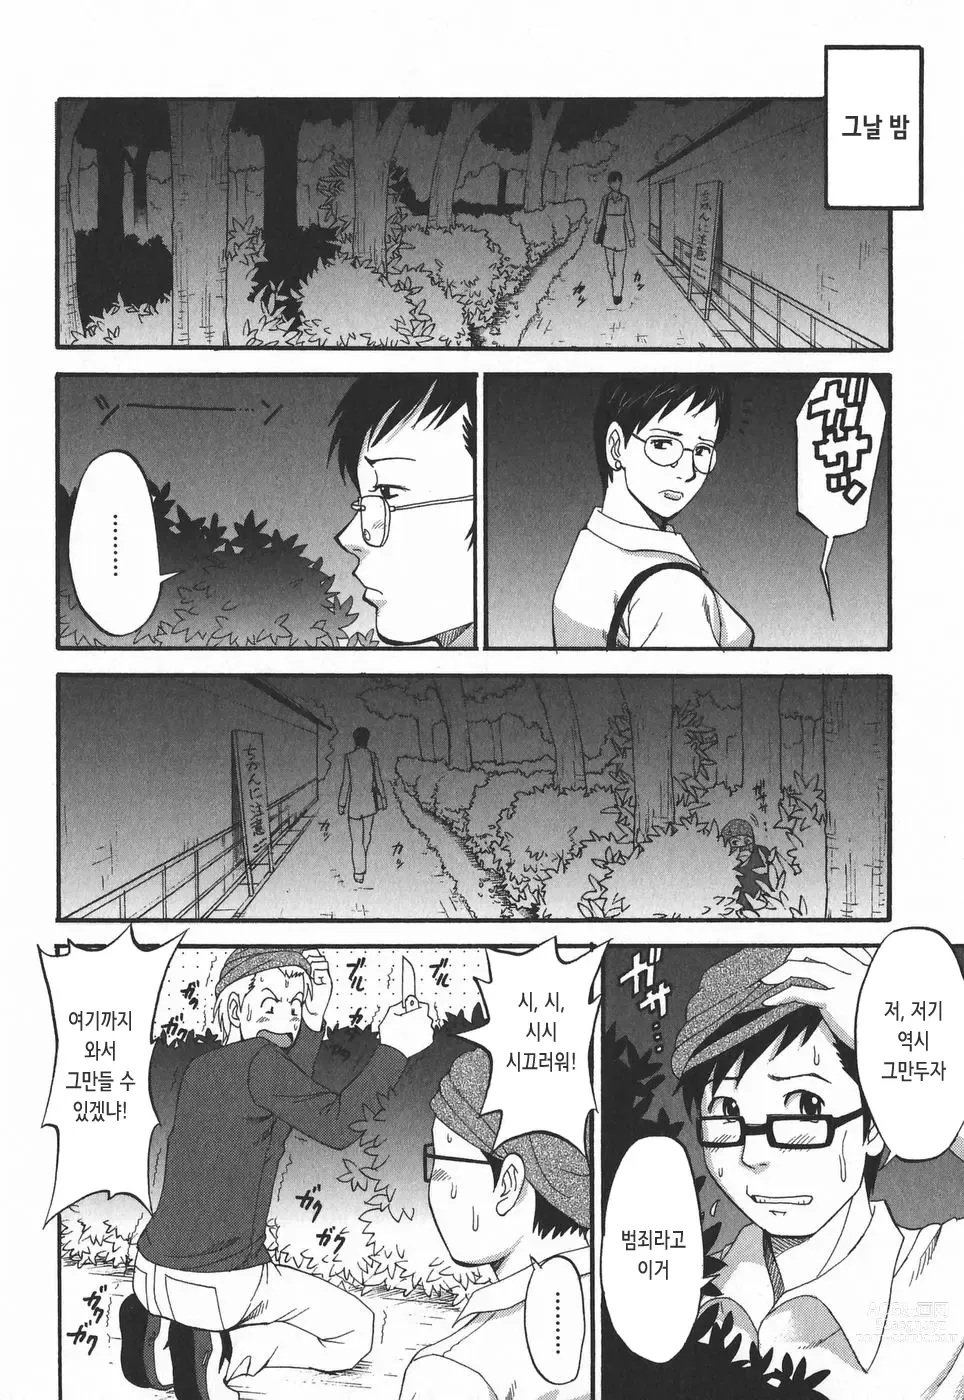 Page 179 of doujinshi 하나 씨의 휴일 2